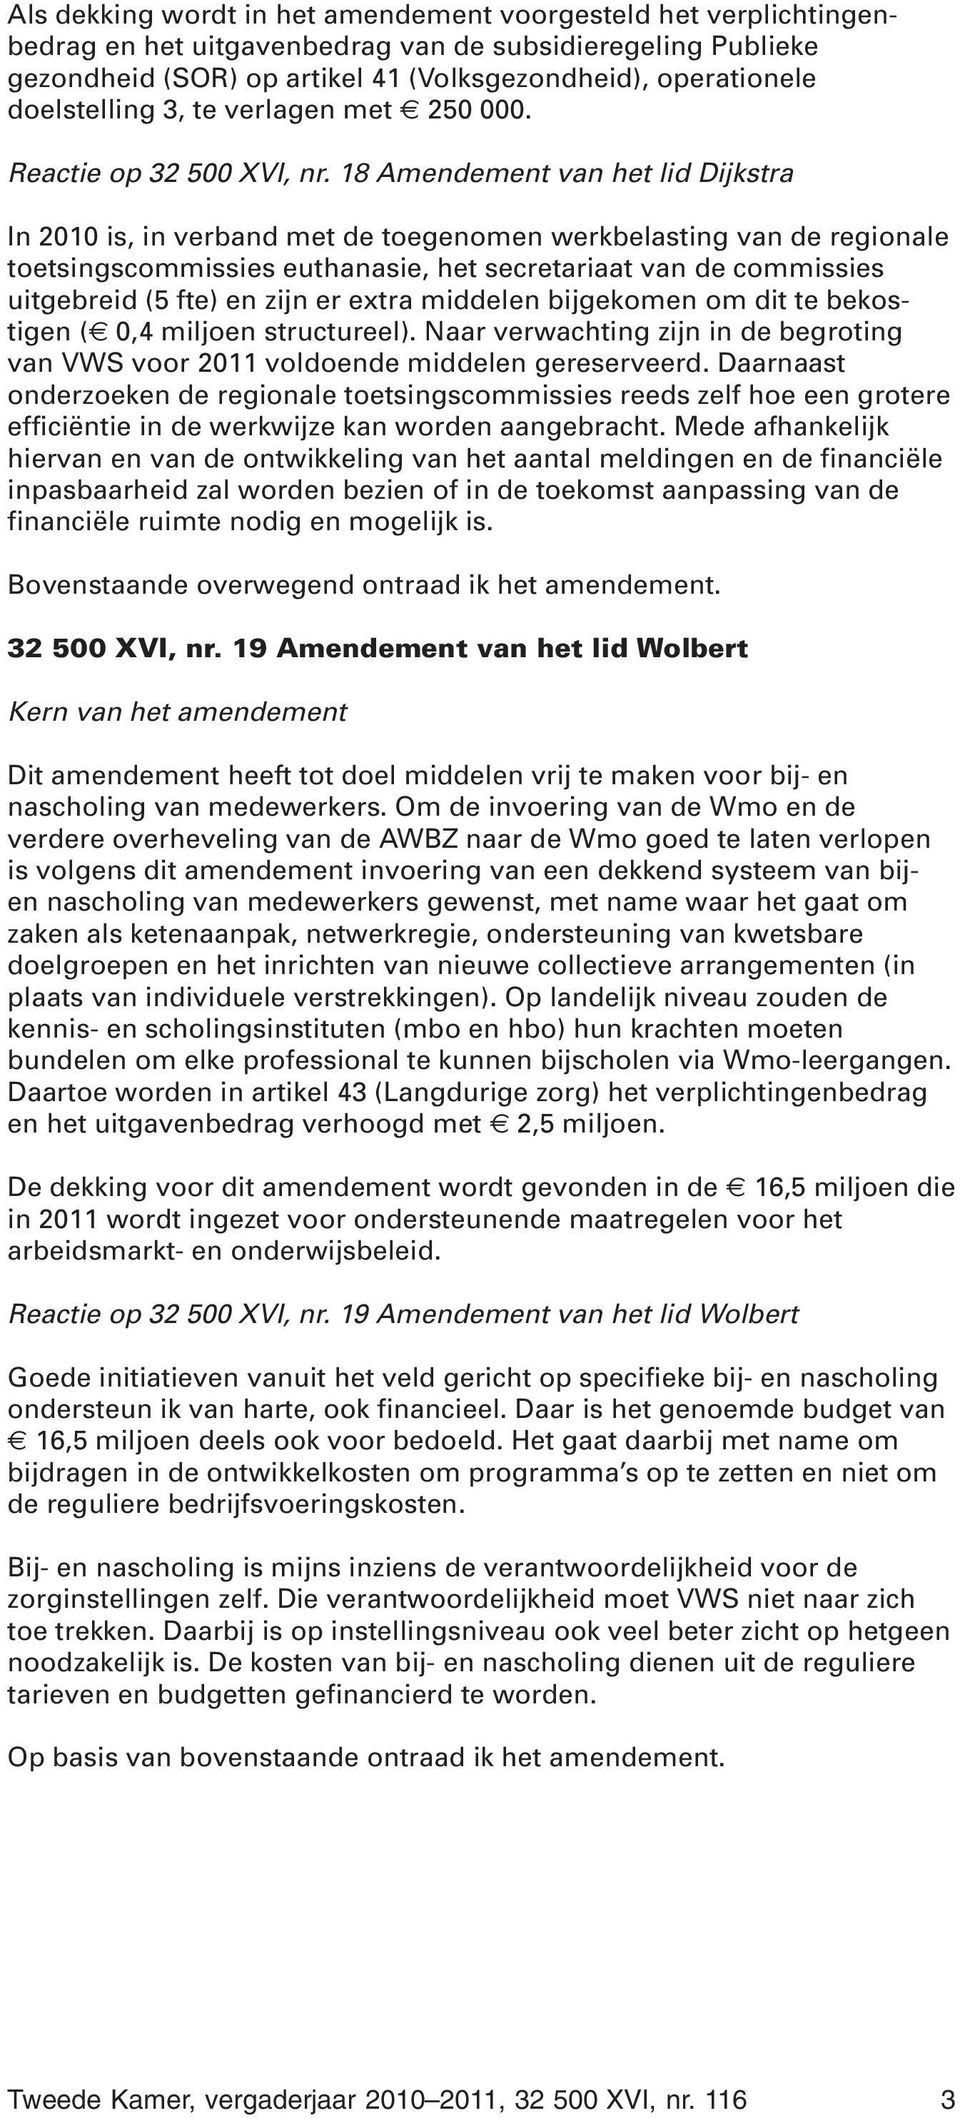 18 Amendement van het lid Dijkstra In 2010 is, in verband met de toegenomen werkbelasting van de regionale toetsingscommissies euthanasie, het secretariaat van de commissies uitgebreid (5 fte) en